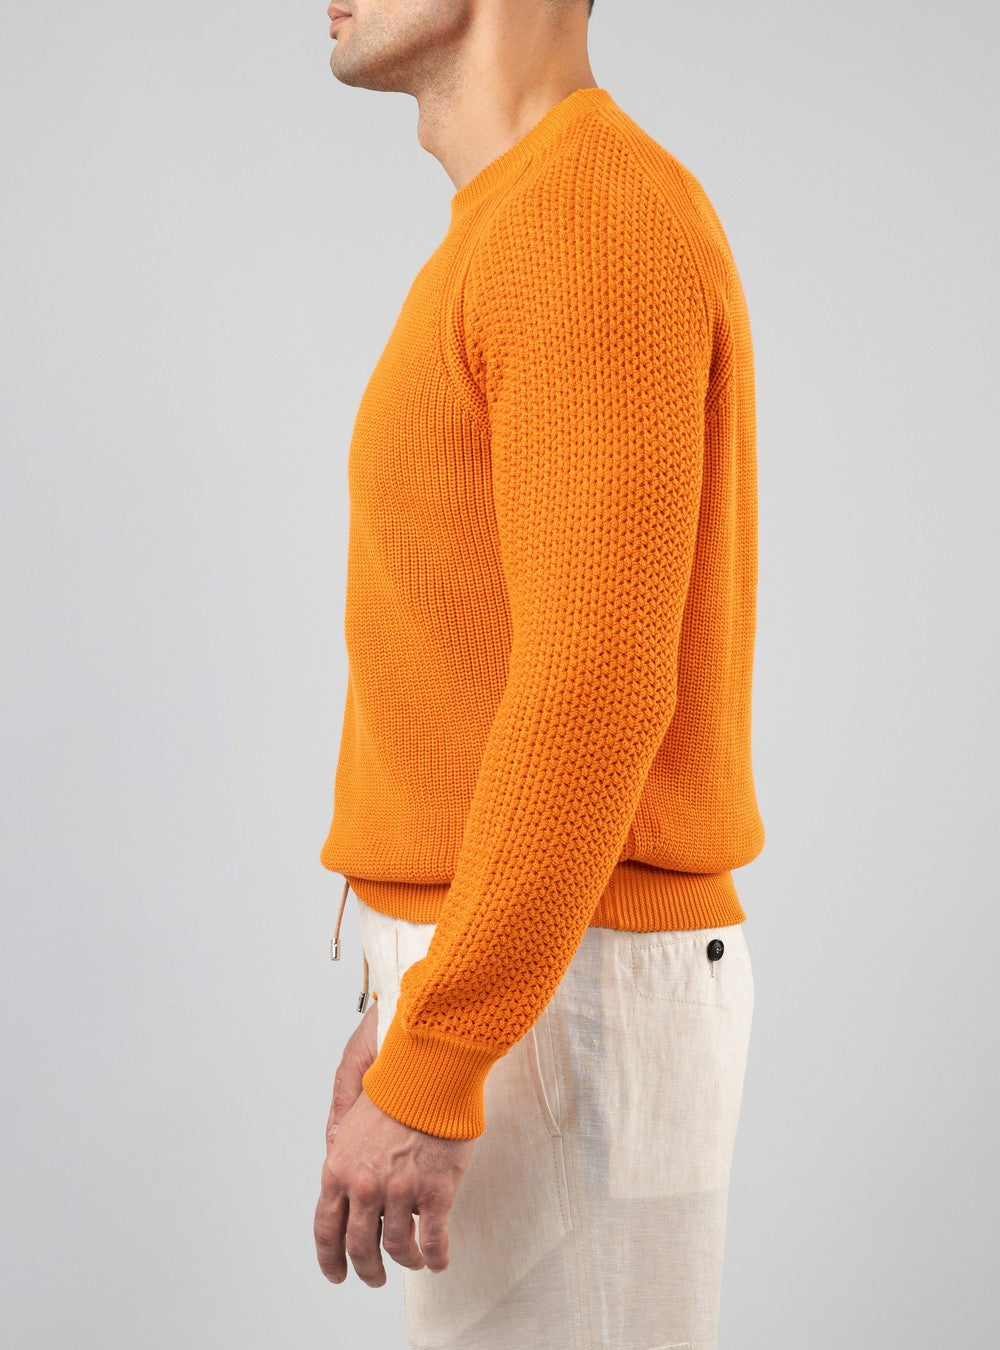 Oceanus Round Neck Sweater in Sea Island Cotton, Mandarin